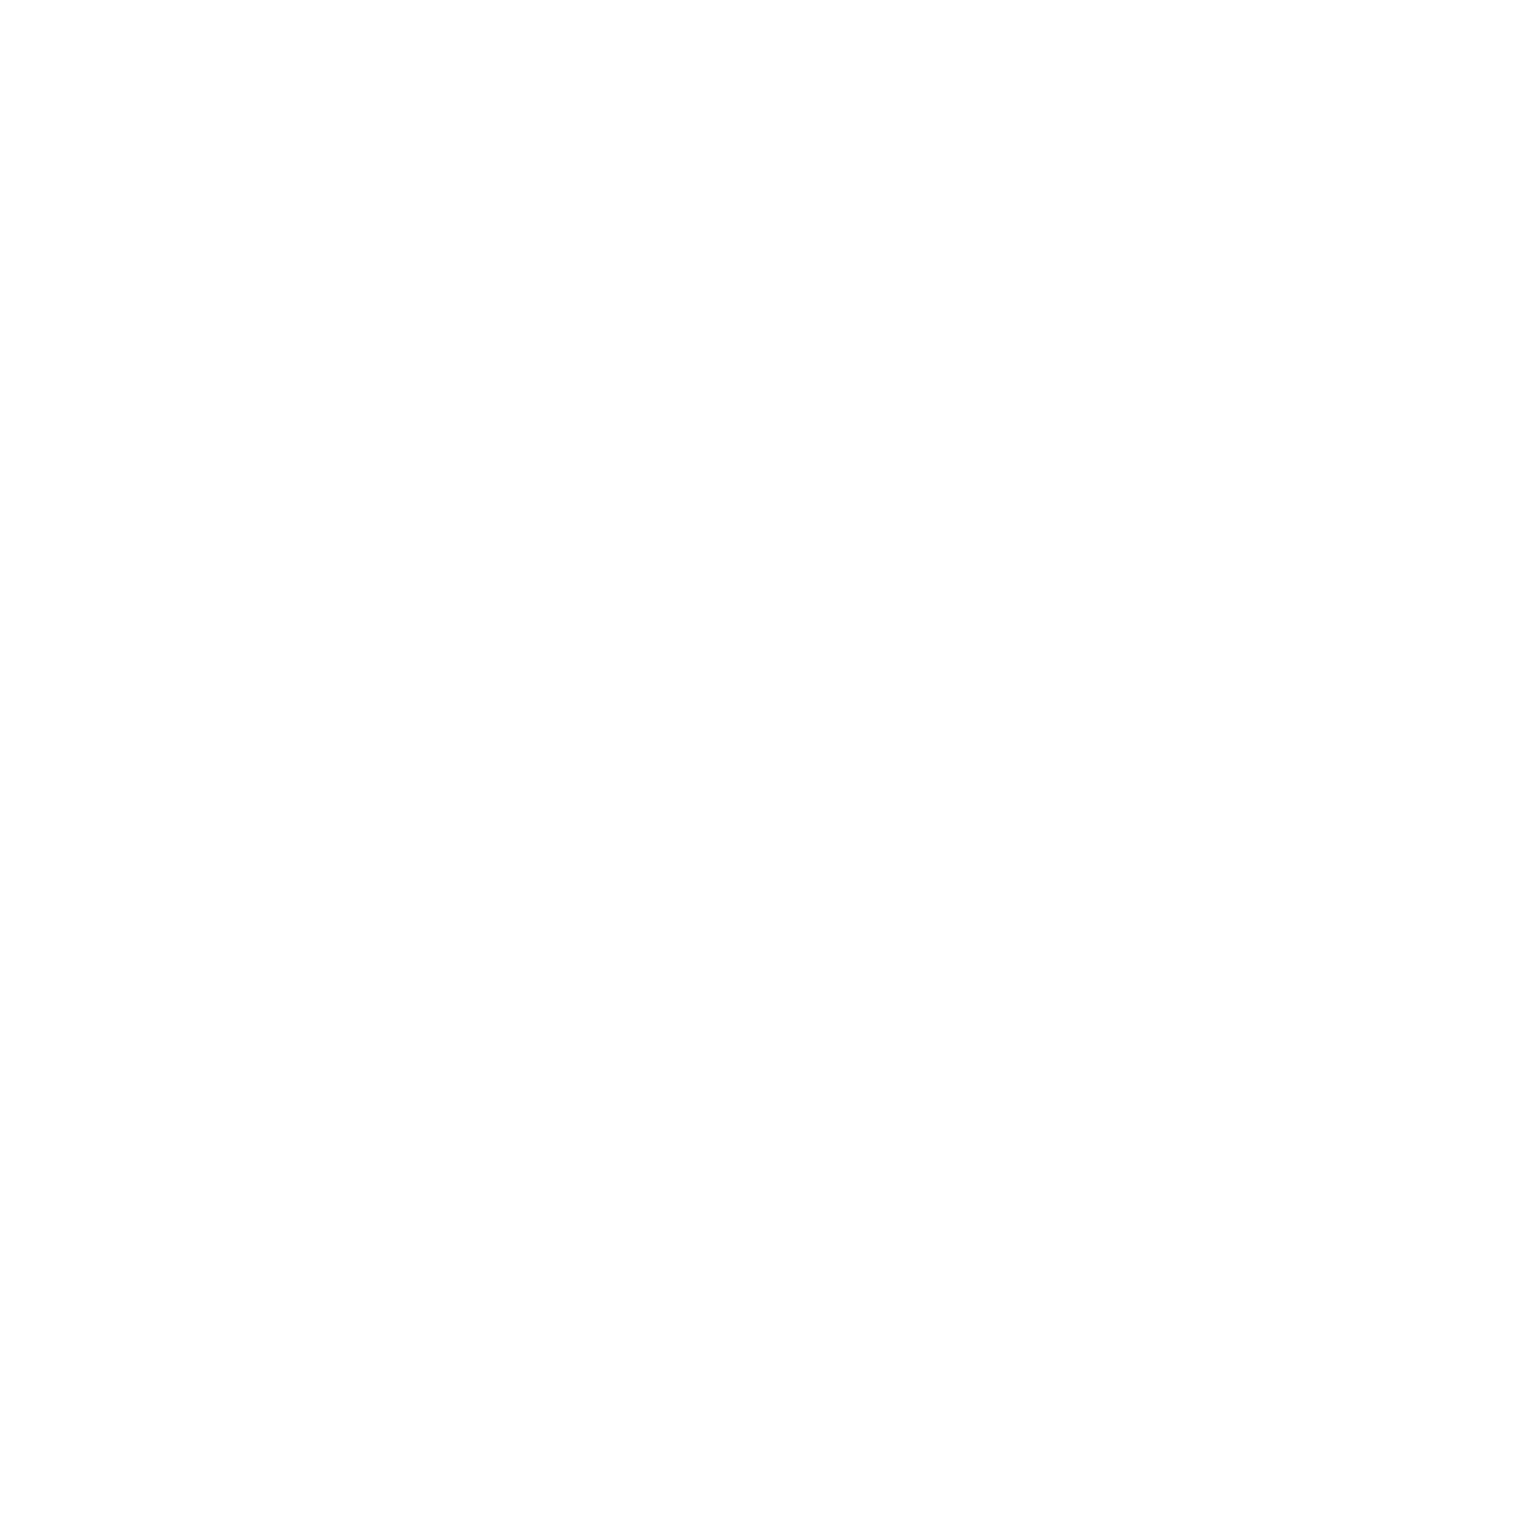 GCL Technology logo pour fonds sombres (PNG transparent)